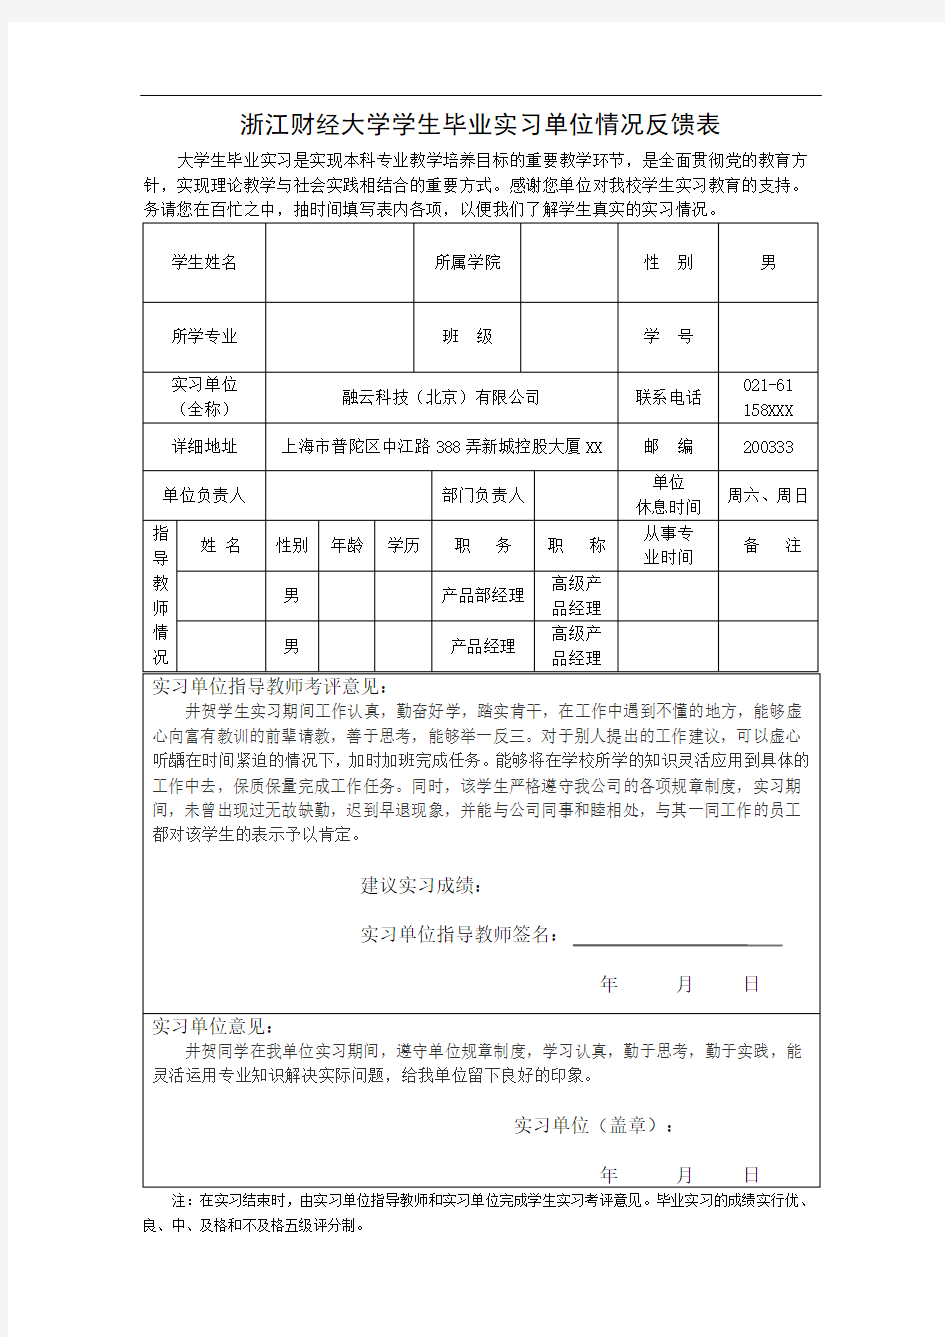 3.浙江财经大学学生毕业实习单位情况反馈表